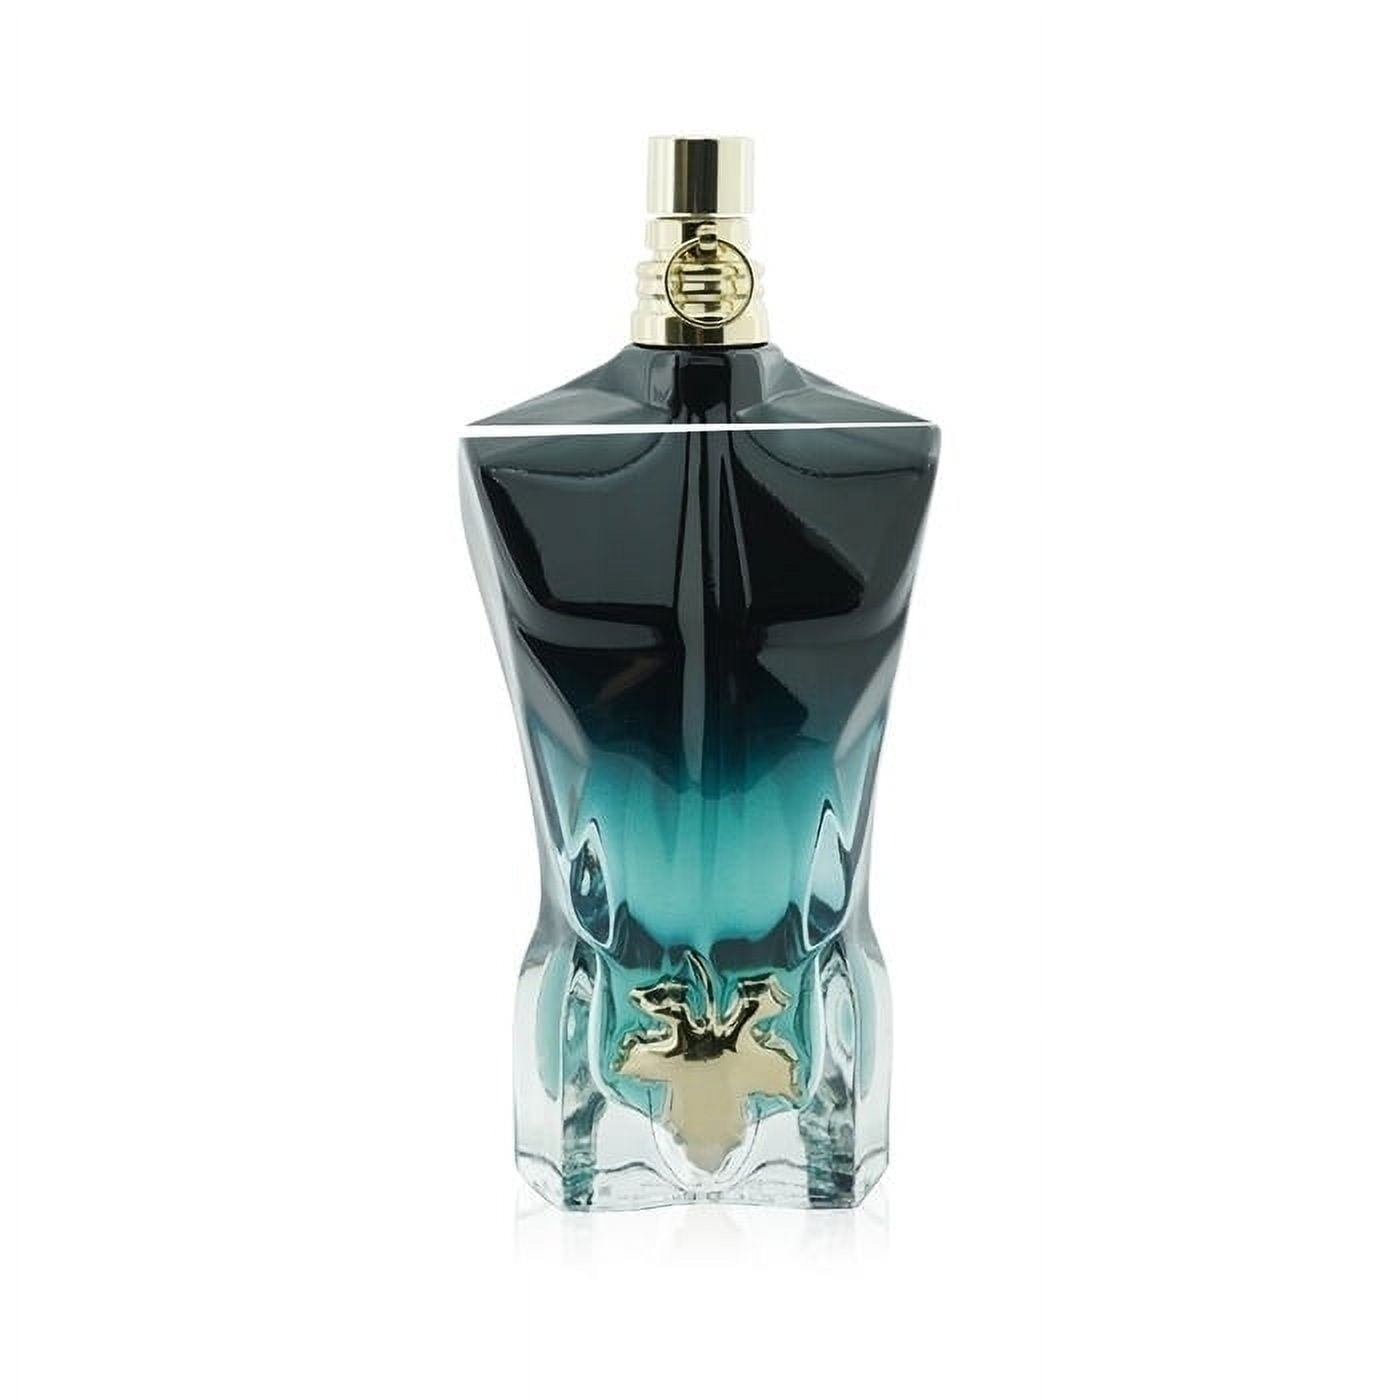  Jean Paul Gaultier Le Male Le Parfum EDP Intense Spray Men 4.2  oz : Beauty & Personal Care